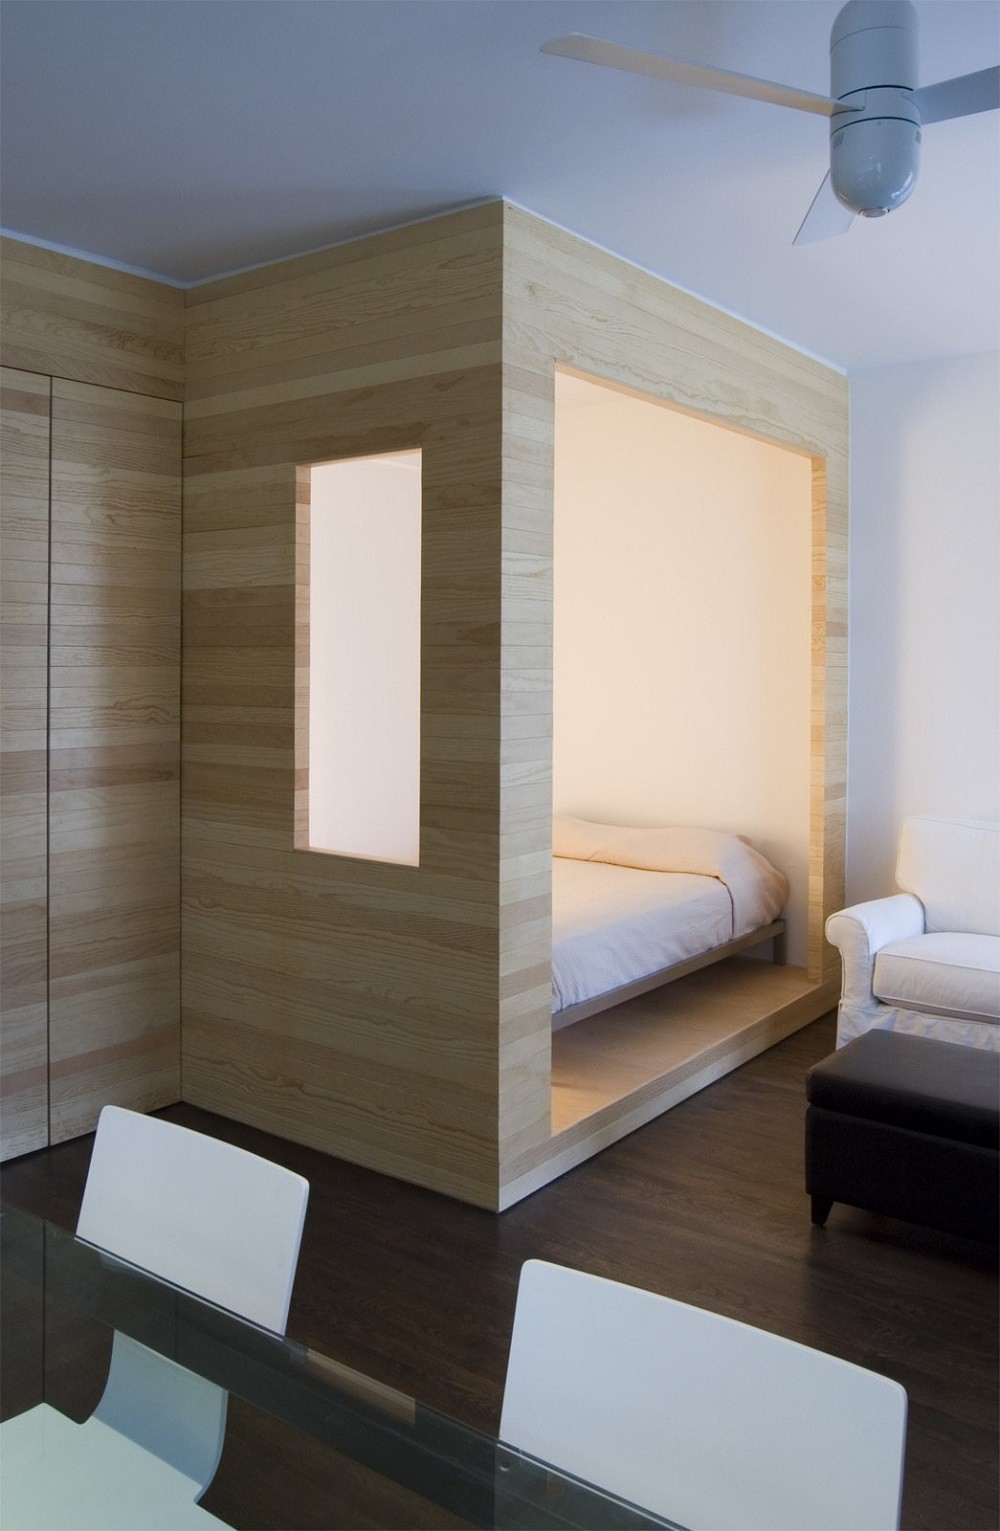 Trong căn hộ nhỏ ở Brooklyn, phòng ngủ được đặt gọn trong khung gỗ sơn màu sáng, có thể đóng - mở linh hoạt giúp không gian thông thoáng hơn